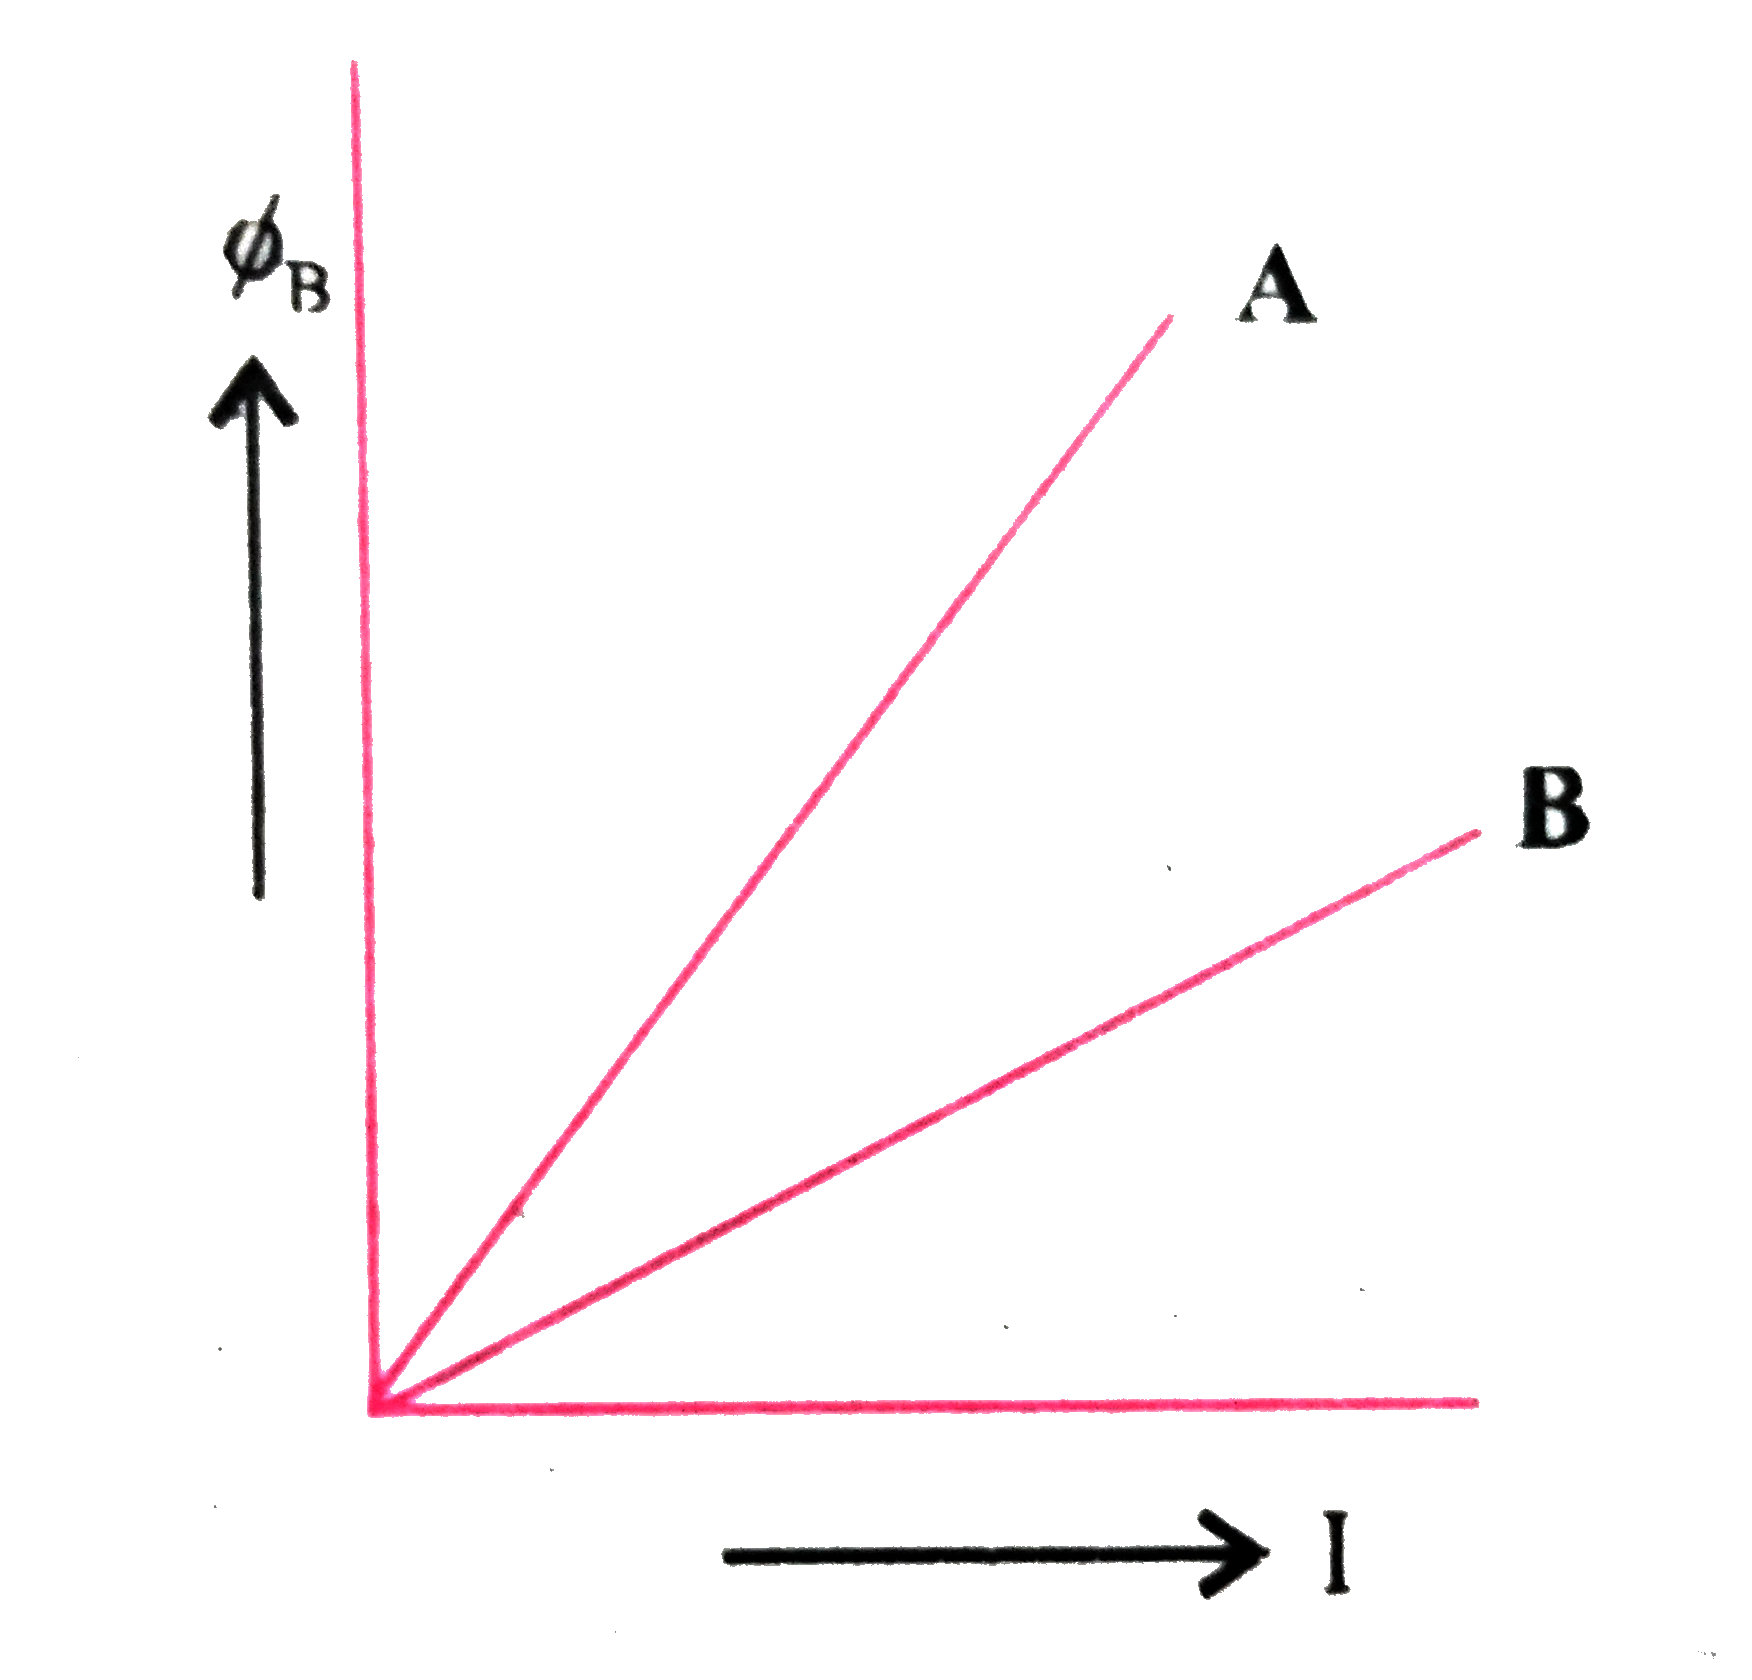 चुम्बकीय फ्लक्स phi(B)  एवं धारा   ( I) के मध्य ग्राफ दो प्रेरकत्व A  व B के लिए प्रदर्शित है । किसके स्वप्रेरकत्व  का मान अधिक होगा ?